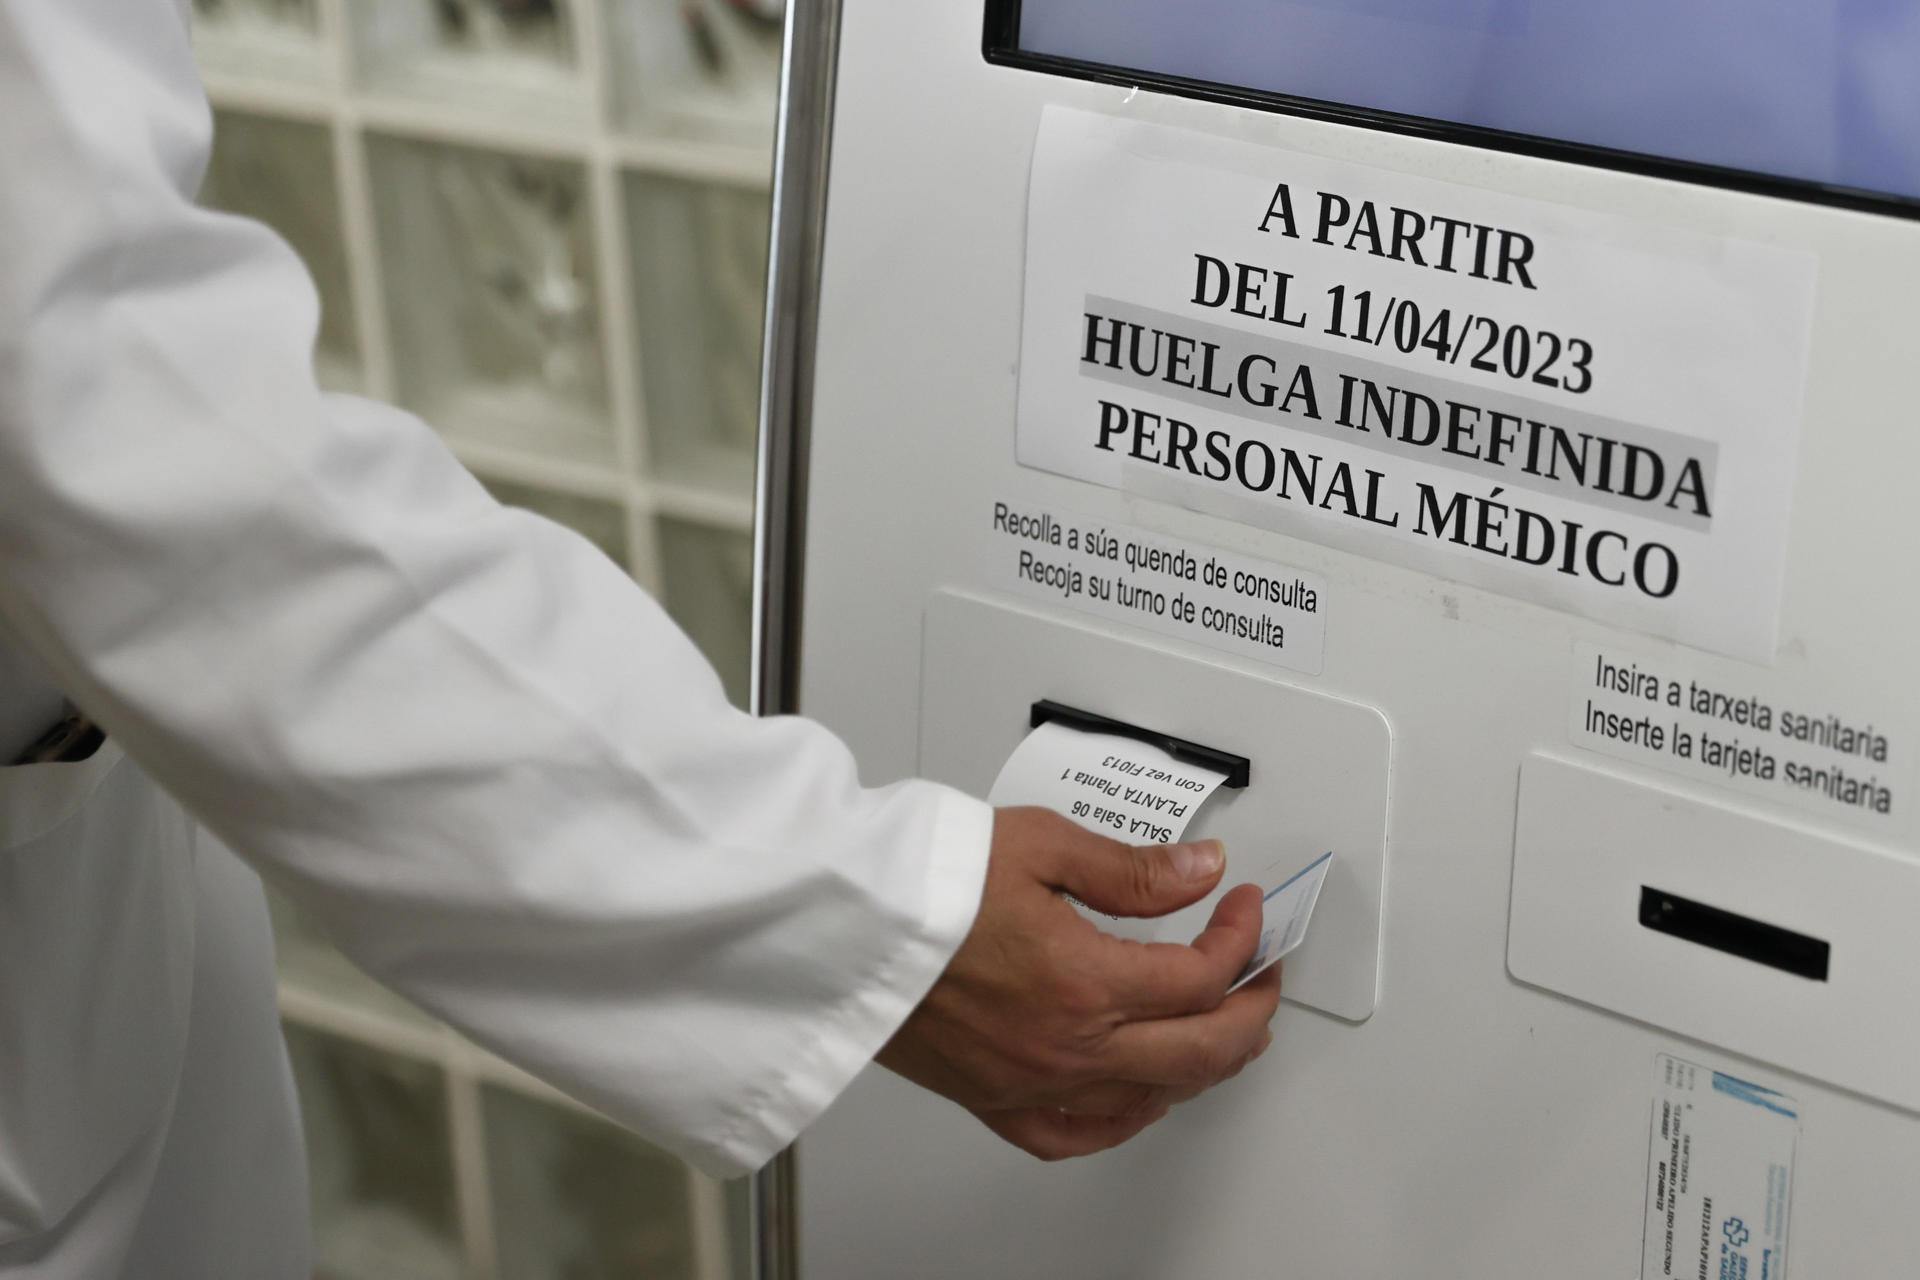 Imagen de la semana pasada de una máquina para conseguir cita en un centro de salud en Santiago de Compostela. EFE/ Lavandeira Jr